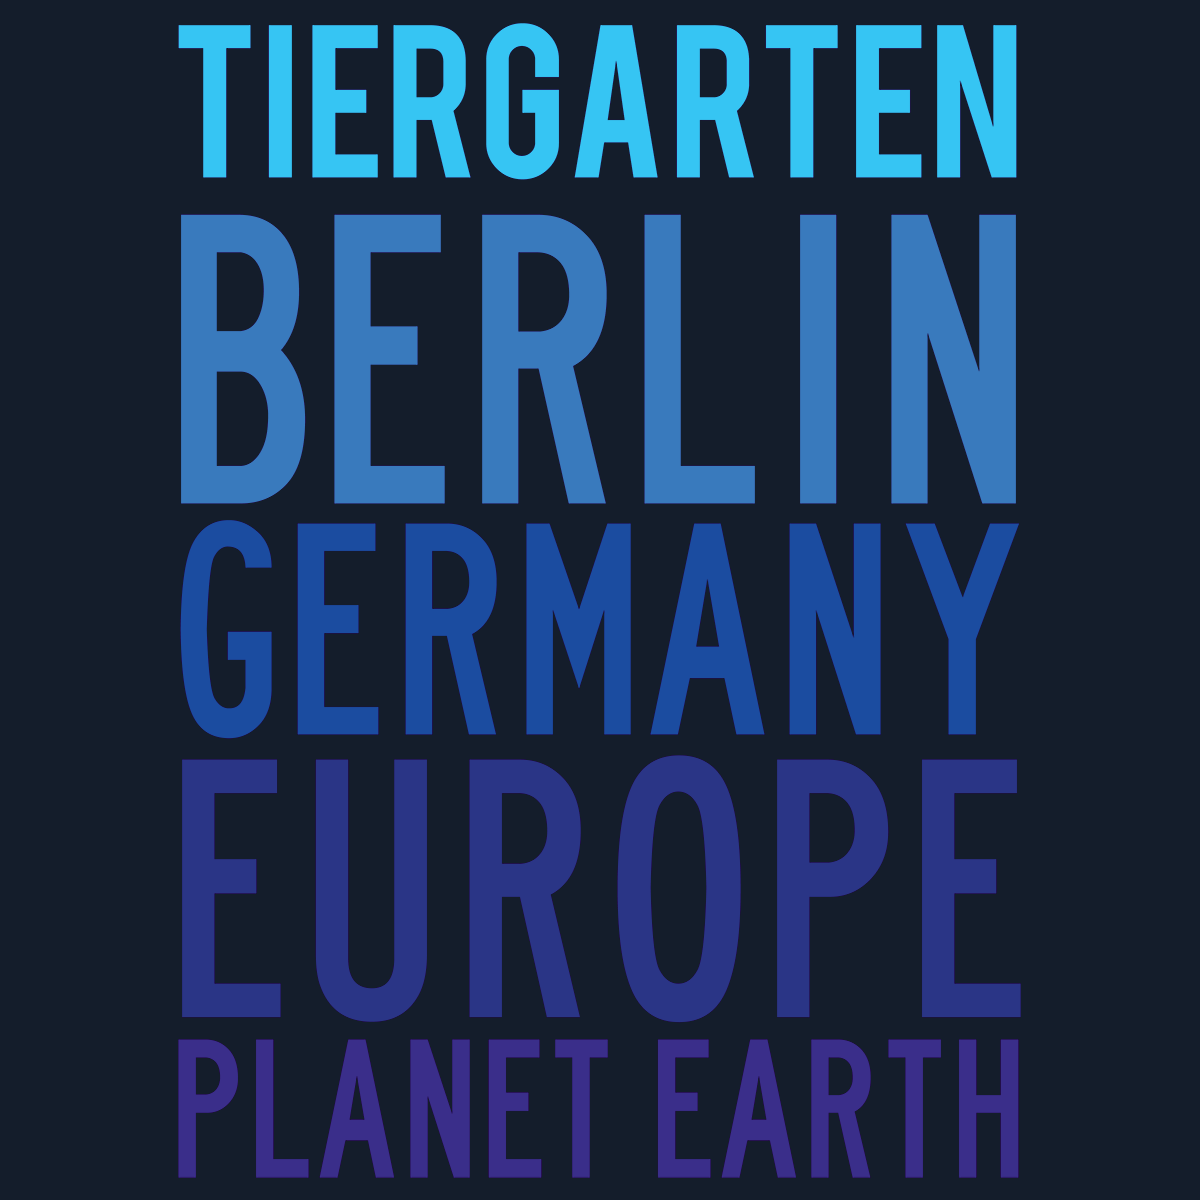 Tiergarten Planet Earth